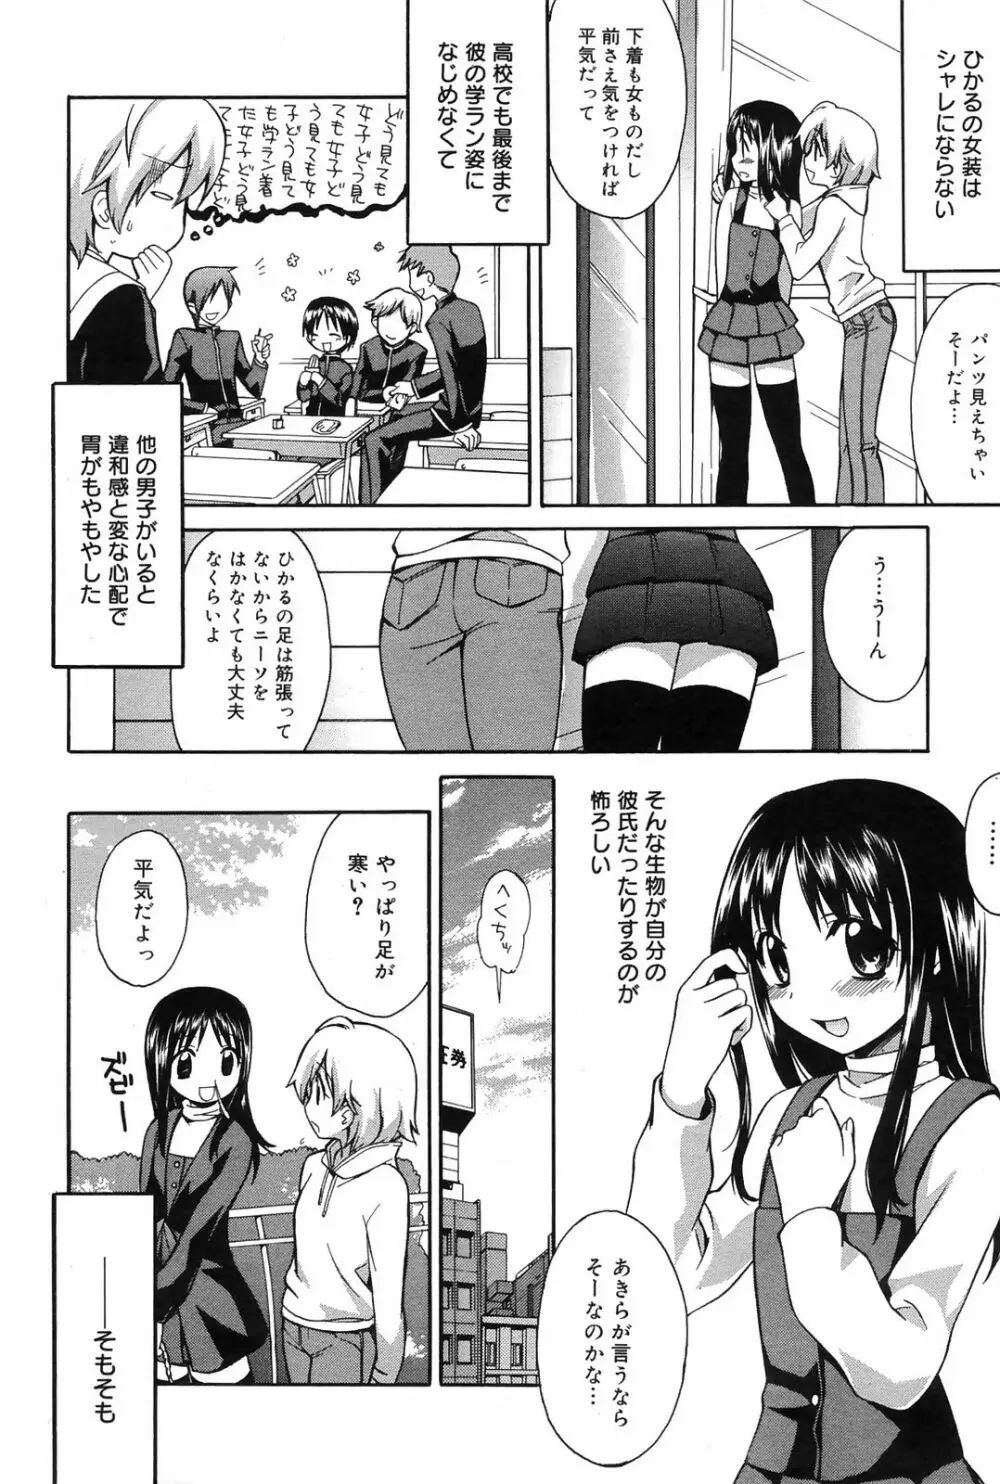 Manga Bangaichi 2009-01 42ページ